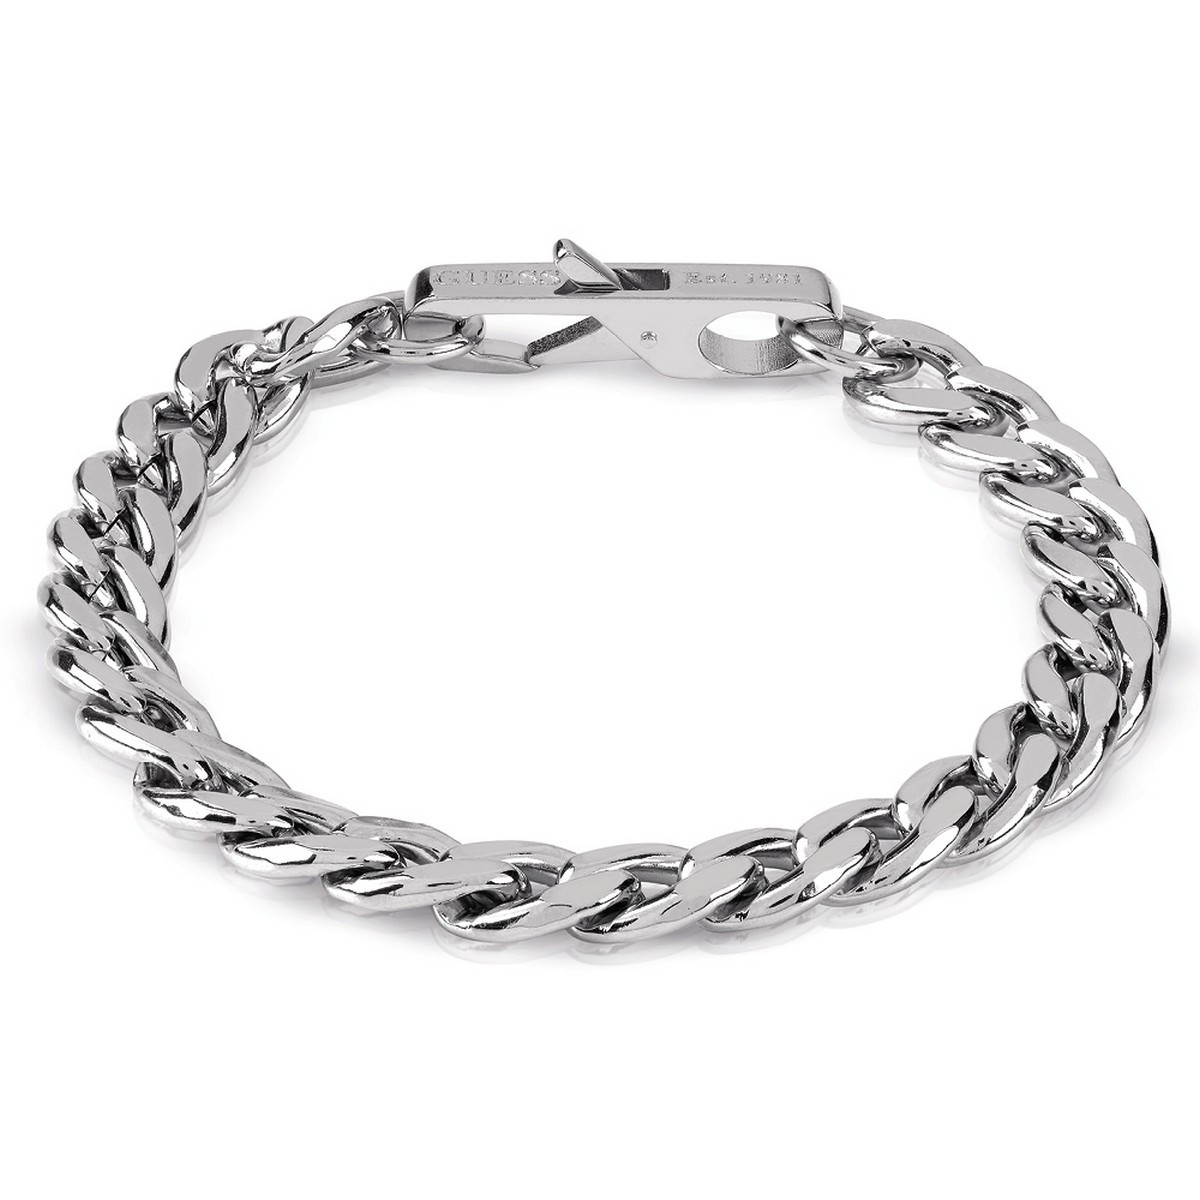 Bracelet Guess "My chains" Acier argenté - JUMB01334JWST